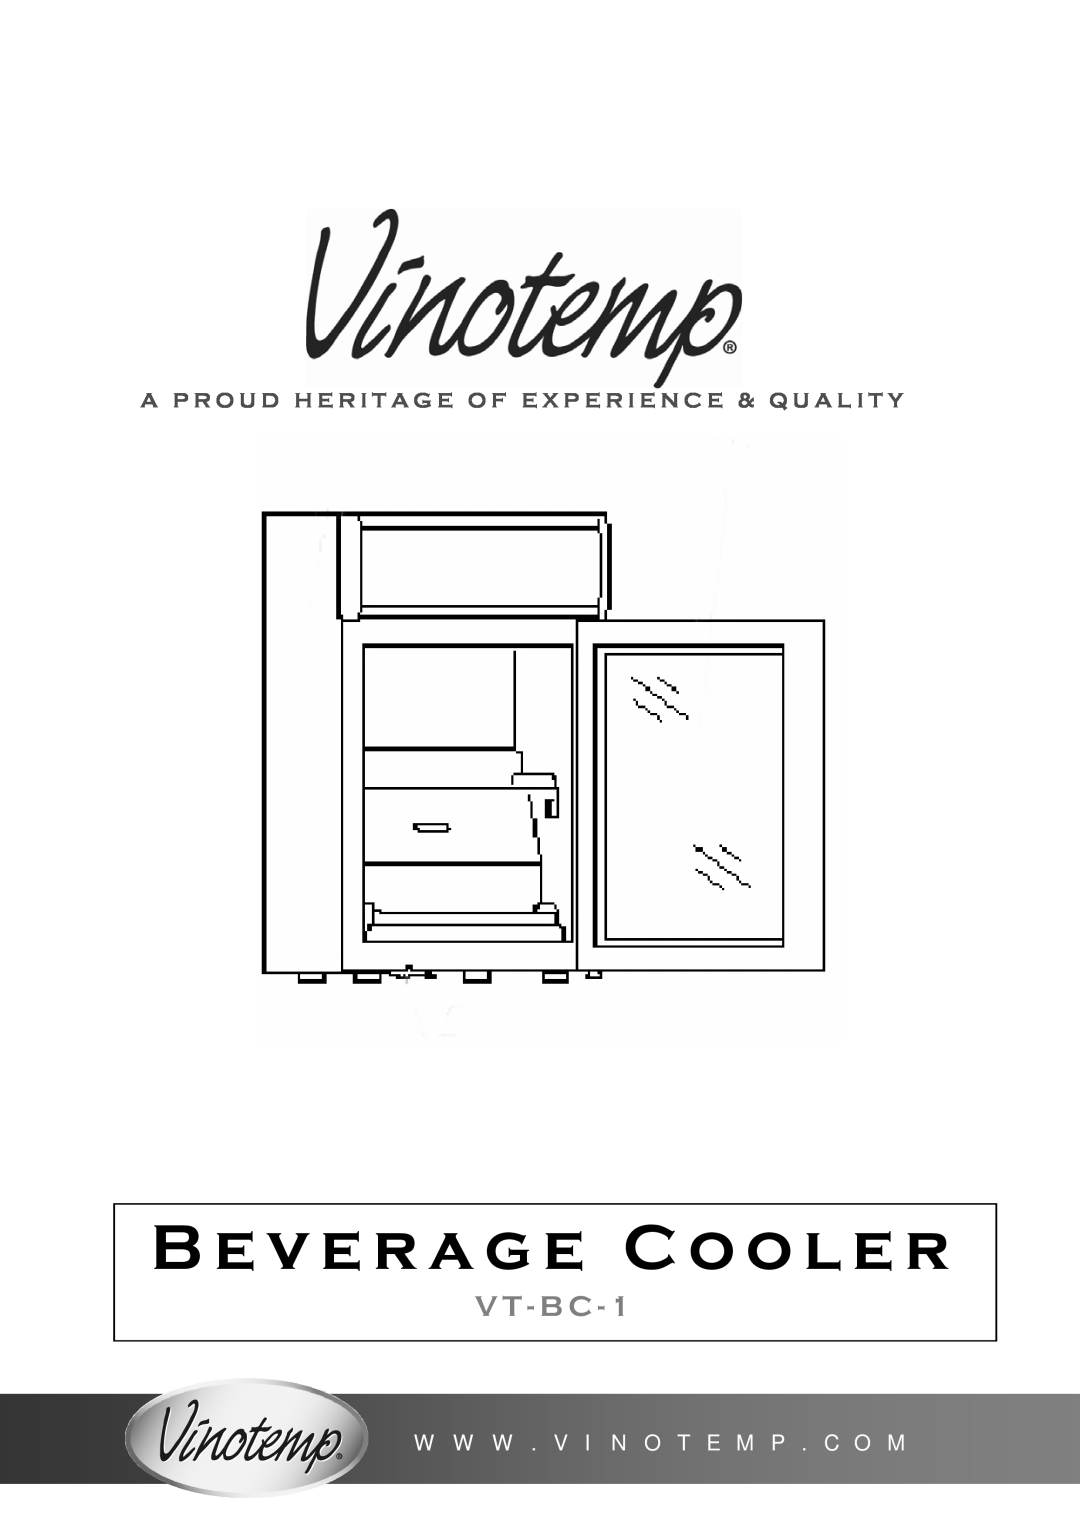 Vinotemp VT-BC-1 manual W W W . V I N O T E M P . C O M, Beverage Cooler, V T - B C 